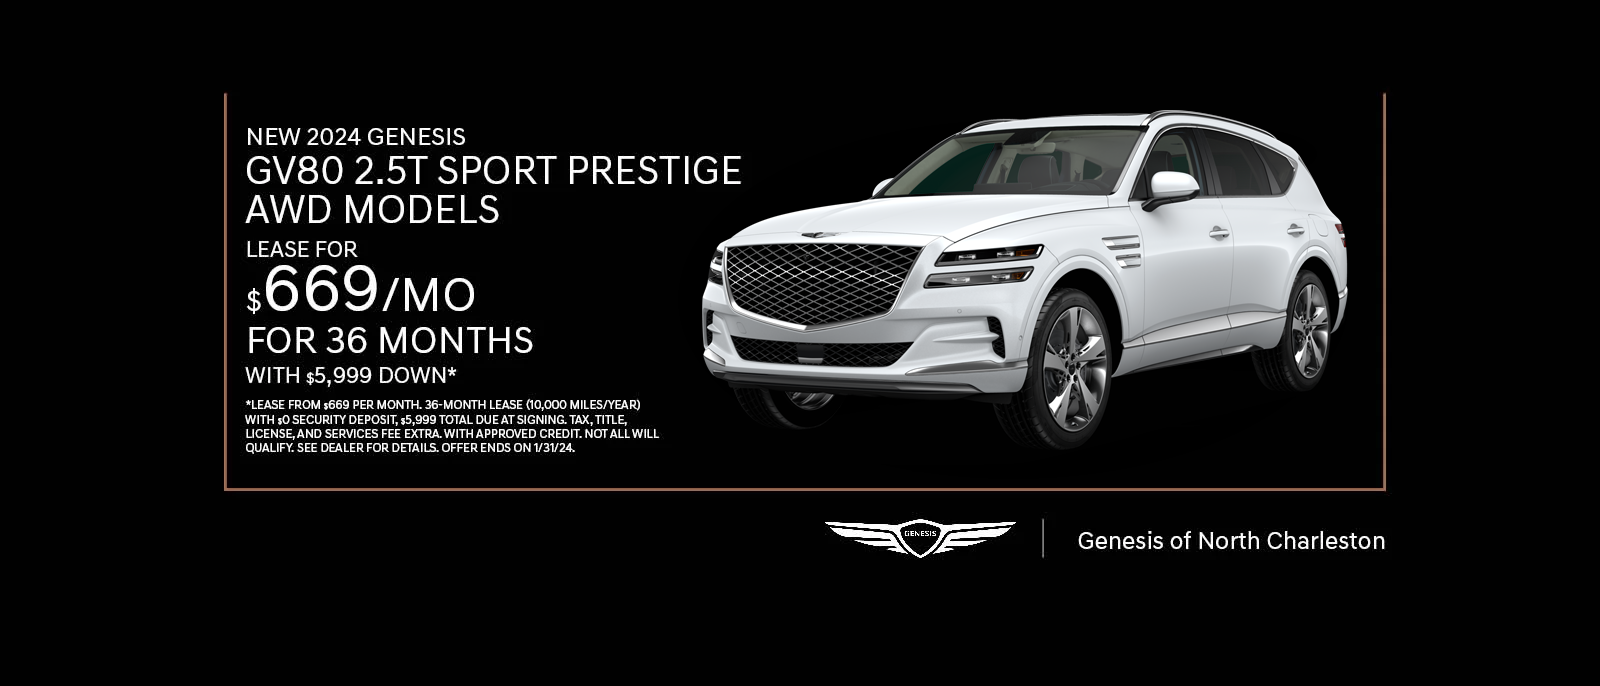 New 2024 Genesis GV80 2.5T Sport Prestige AWD Models